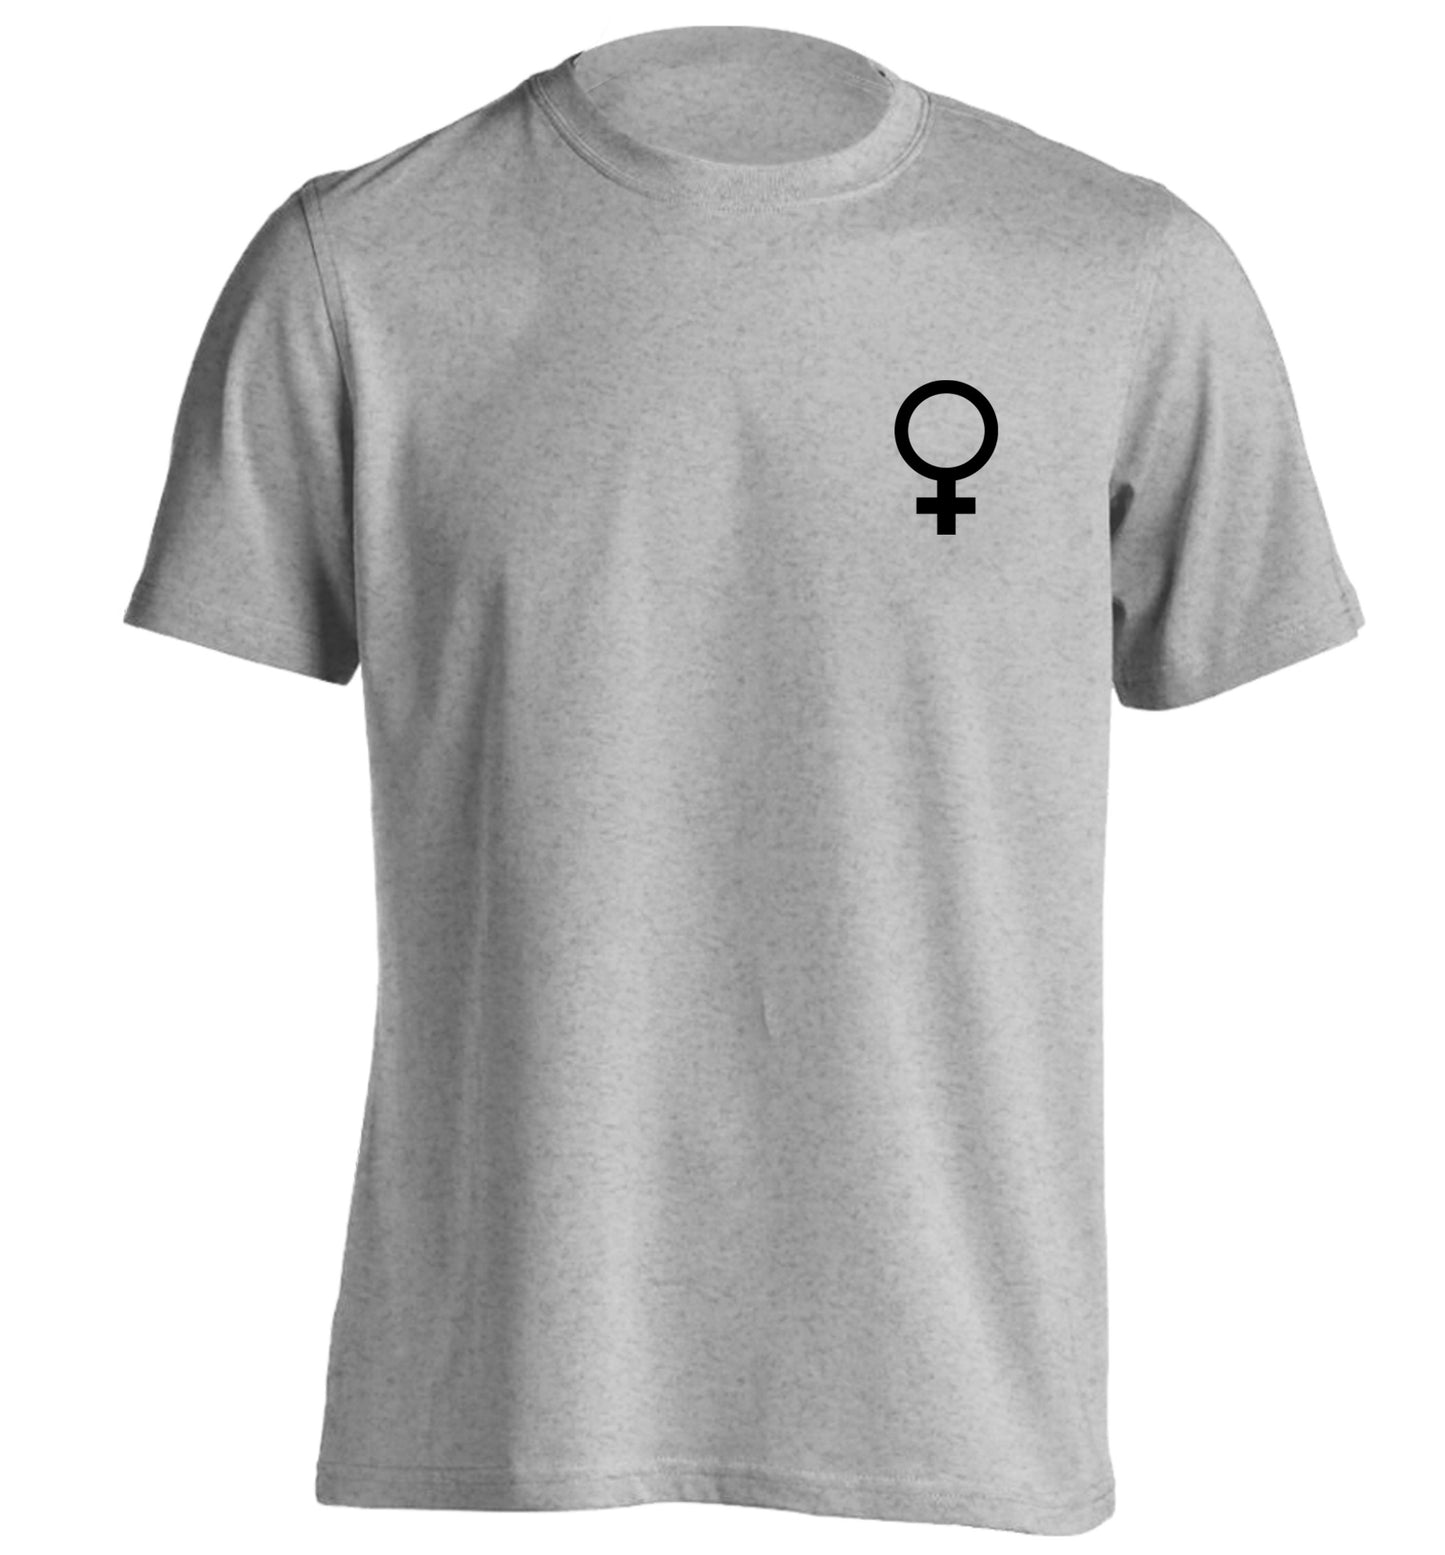 Female pocket symbol adults unisex grey Tshirt 2XL